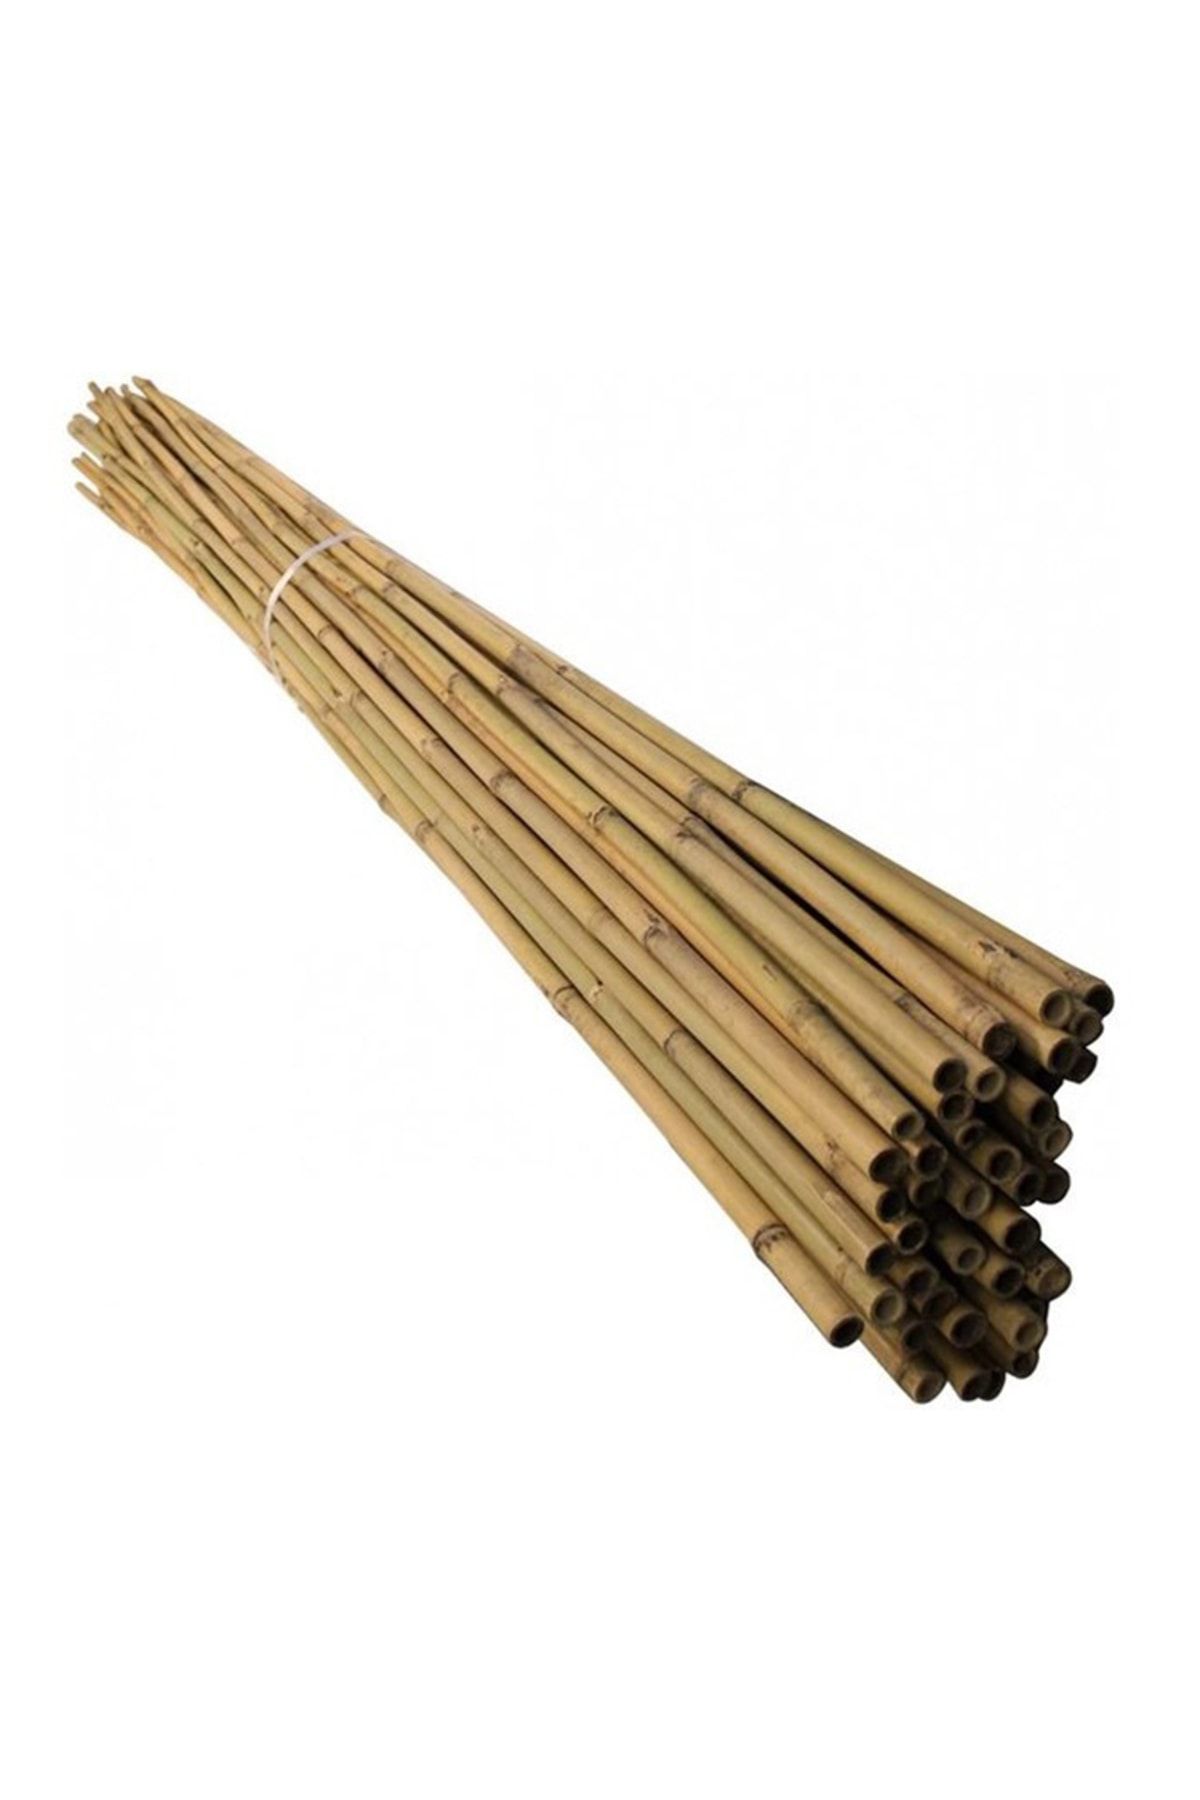 UZAY BAHÇESİ Gerçek Bambu 240 Cm 18-20 Mm Bitki Destek Cubuğu 5 Adet